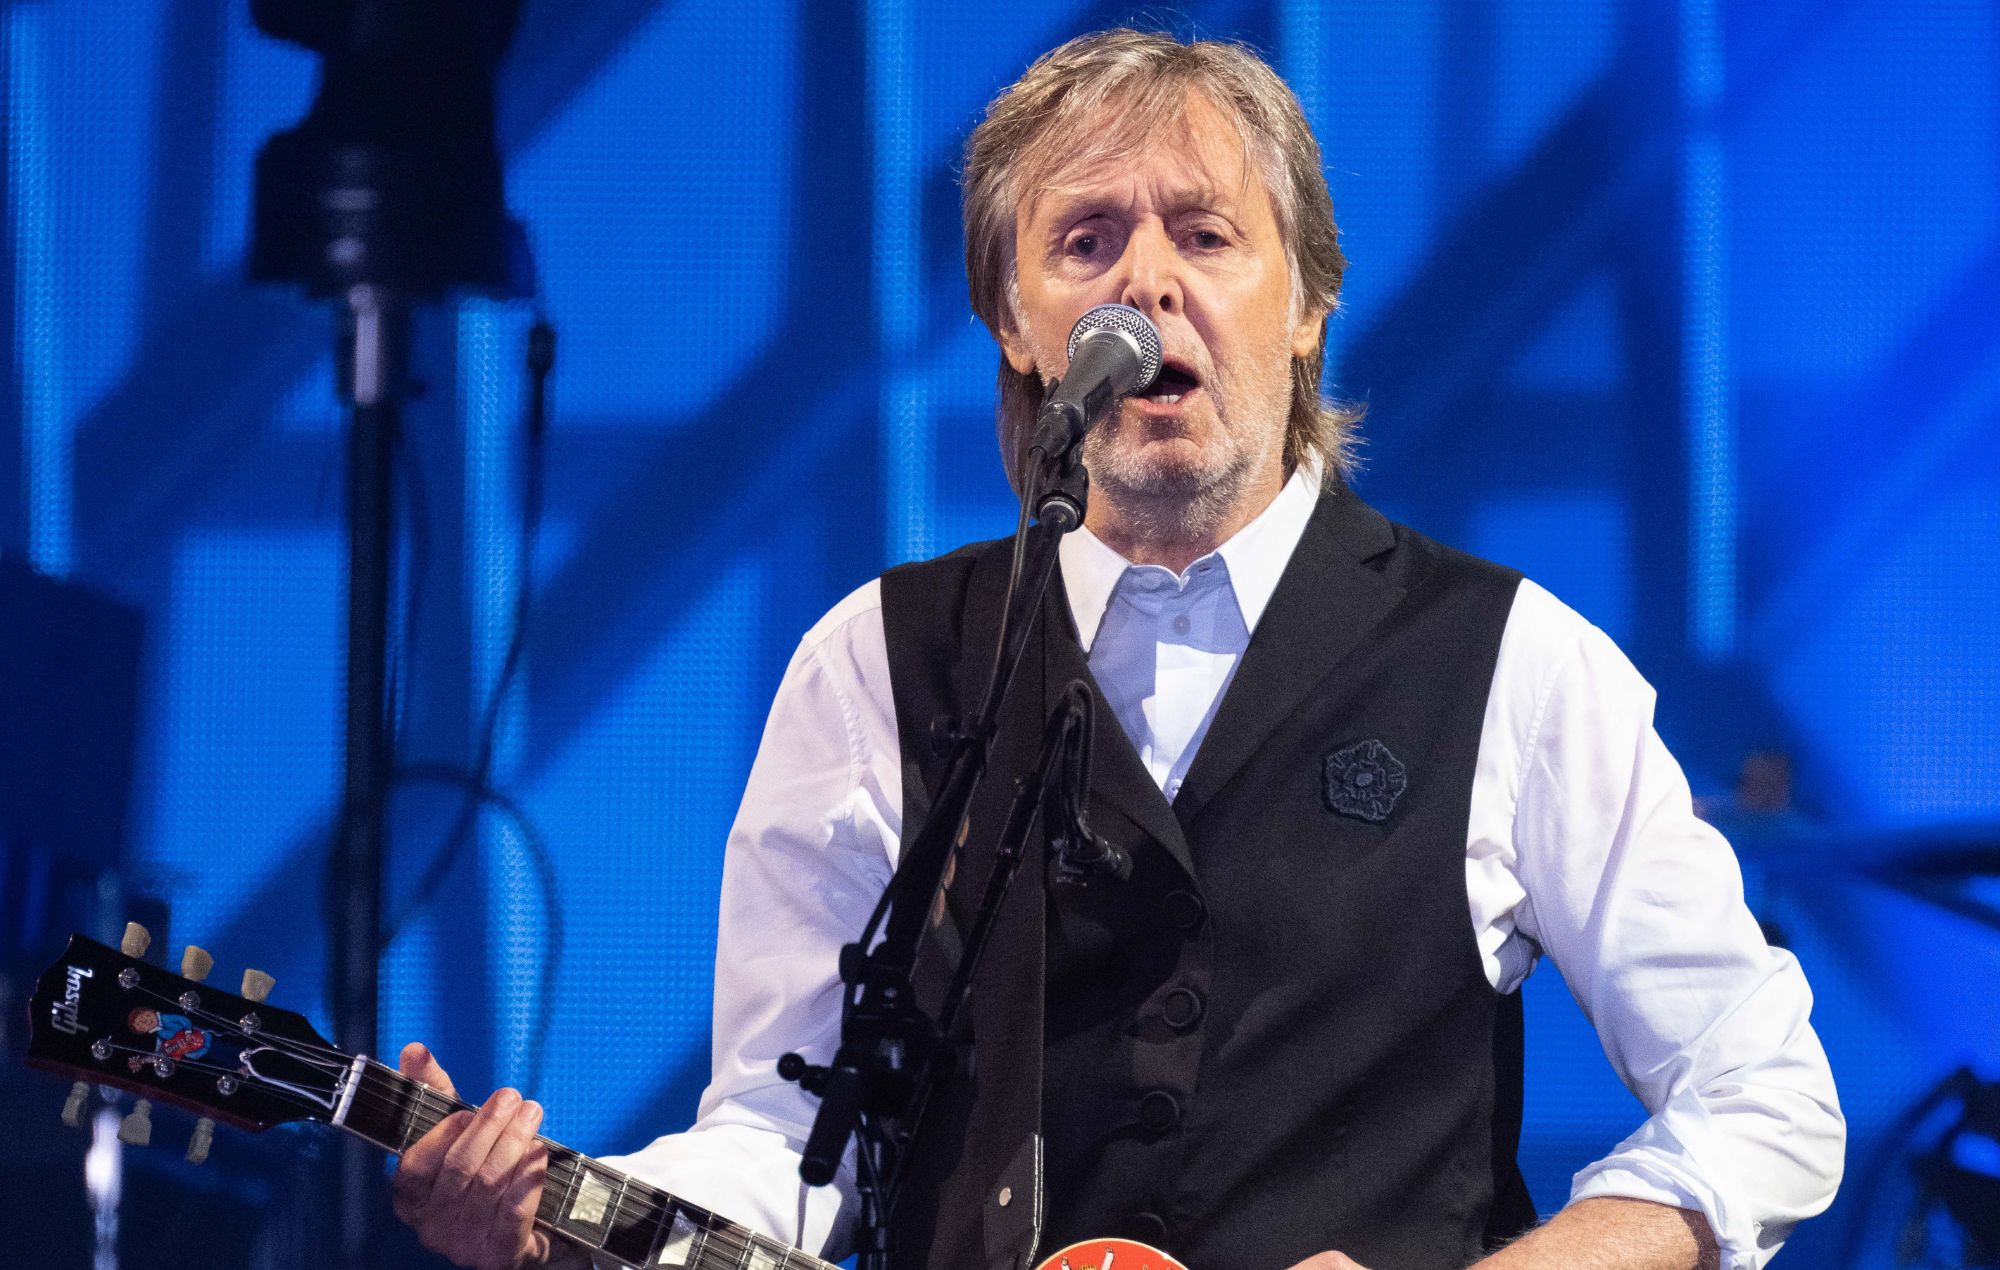 Paul McCartney se convierte en el primer músico multimillonario del Reino Unido